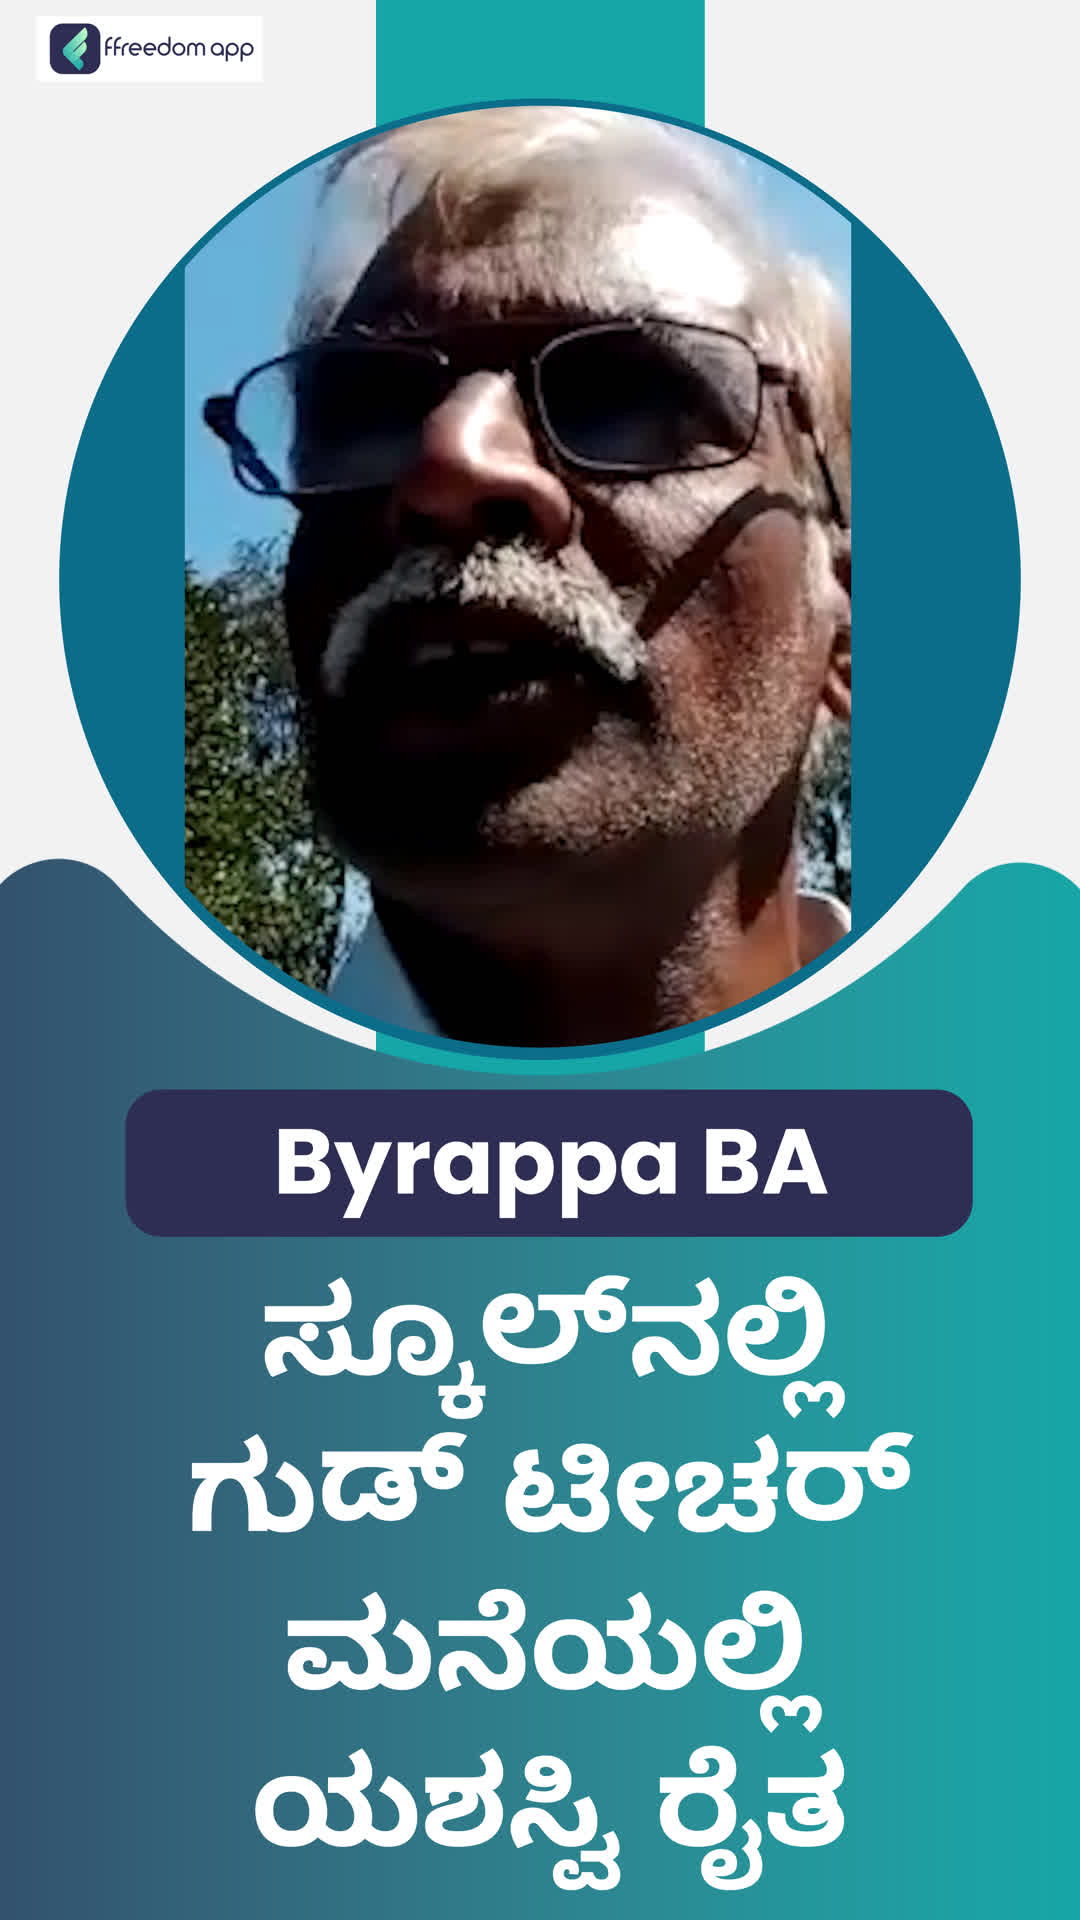 byrappa's Honest Review of ffreedom app - Kolar ,Karnataka